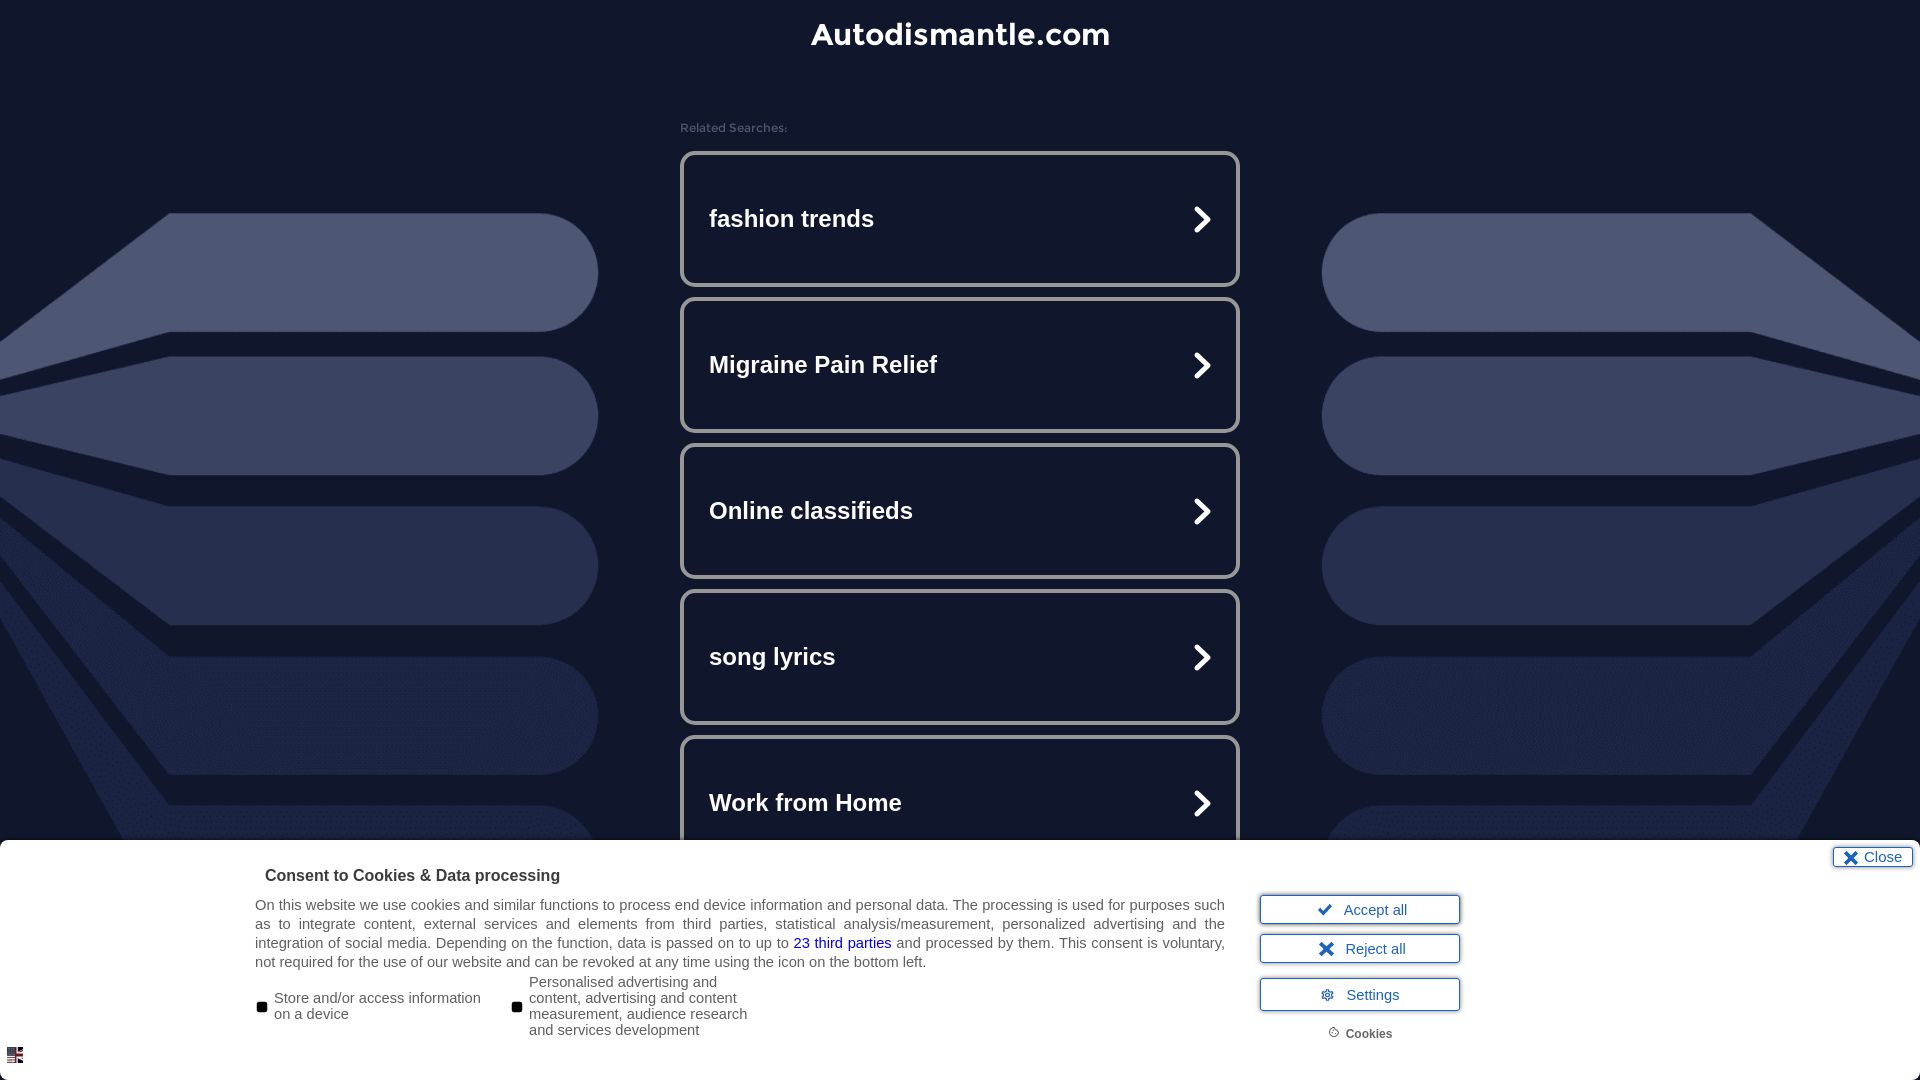 Website status autodismantle.com is   ONLINE